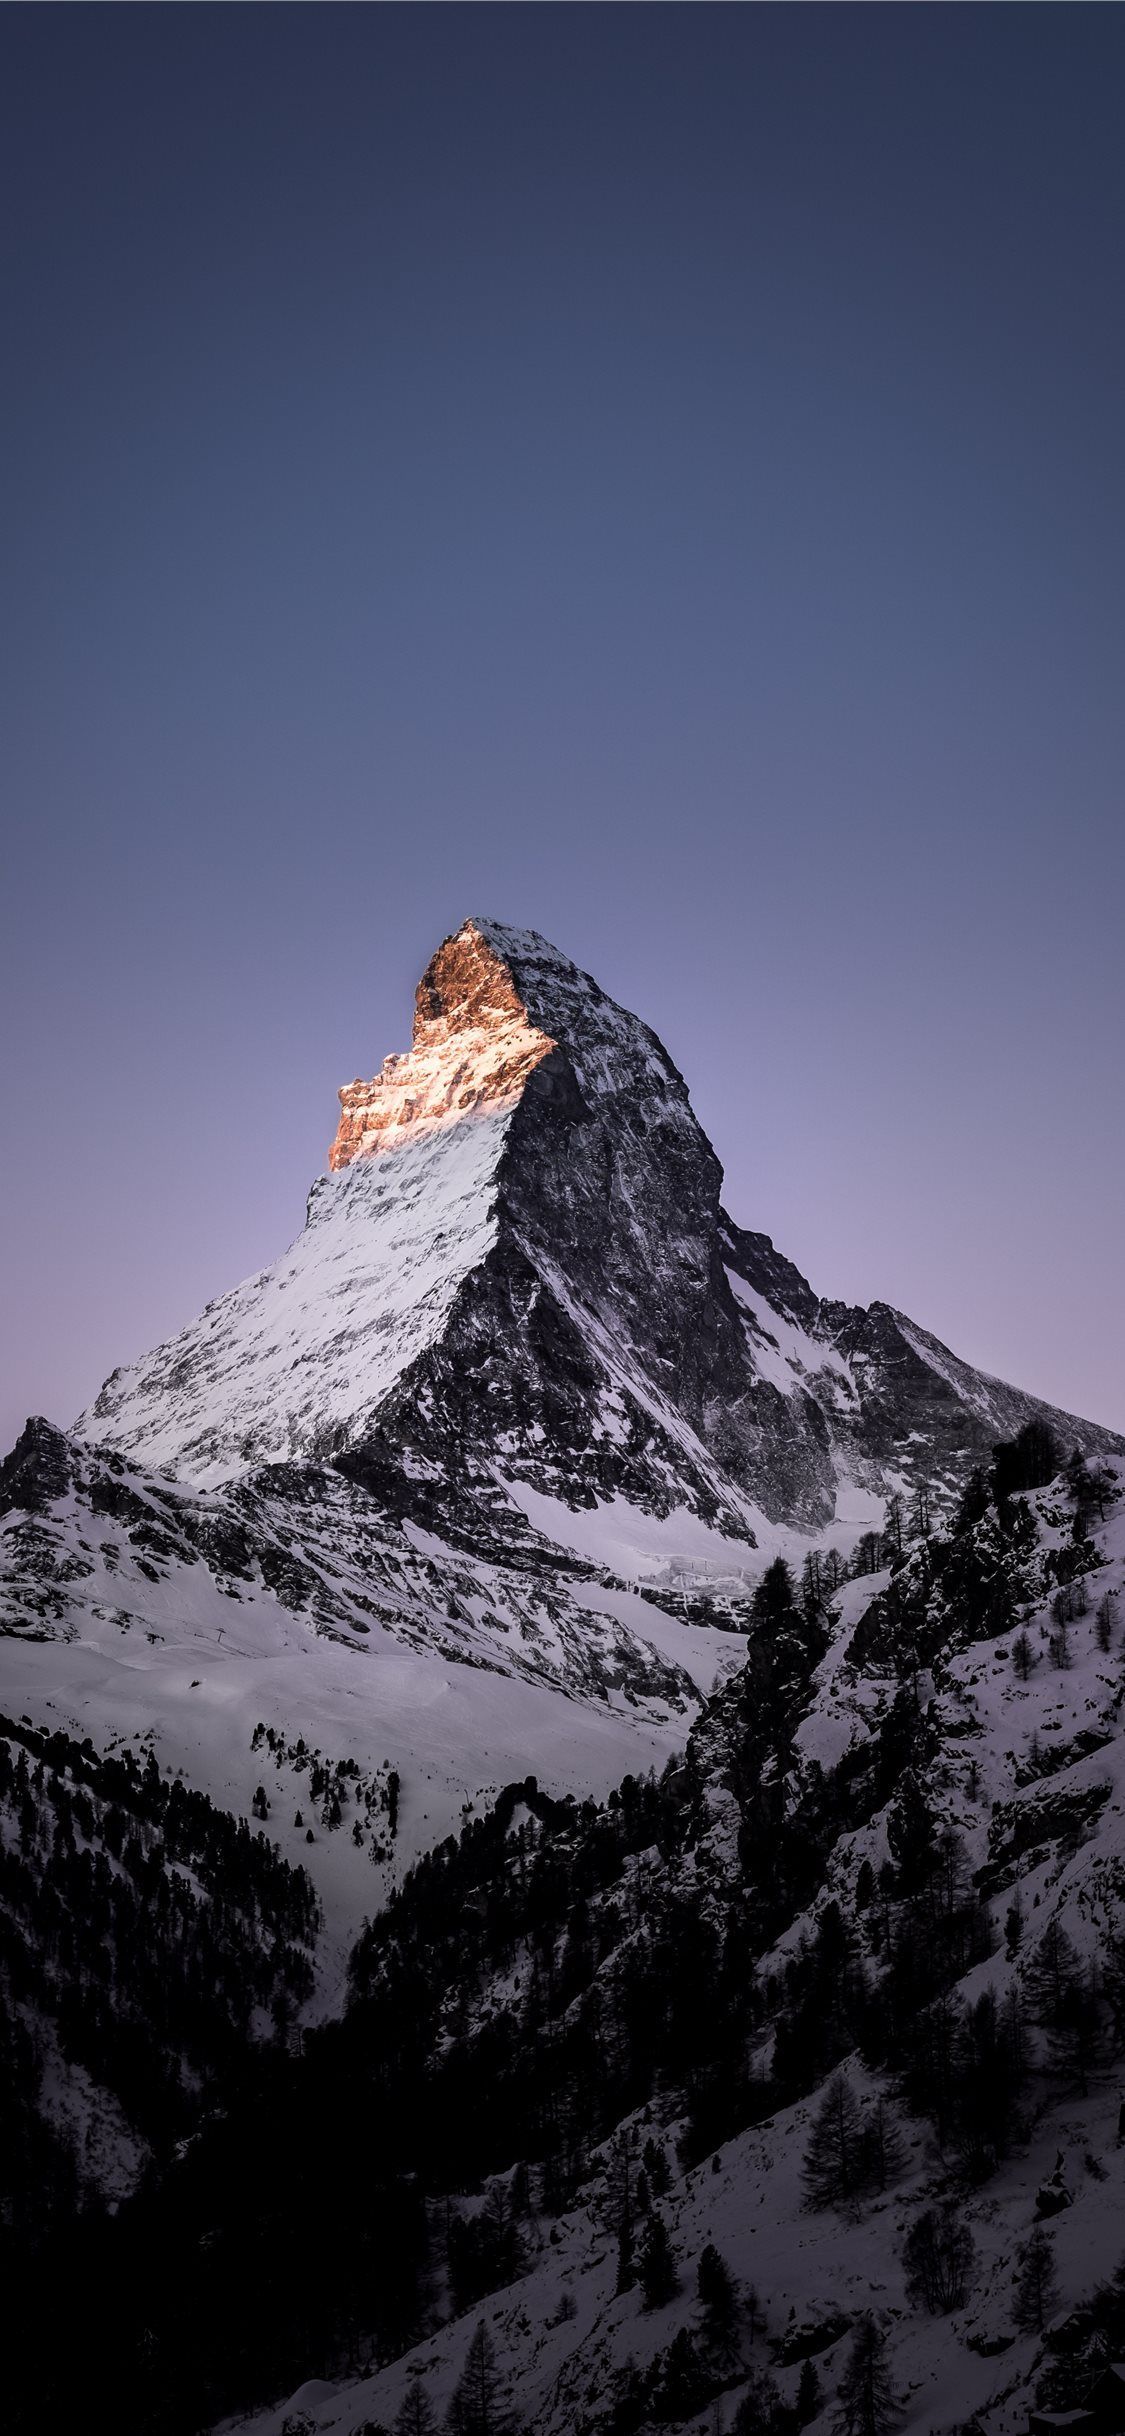 Matterhorn Zermatt Switzerland iPhone X Wallpaper. Фоновые